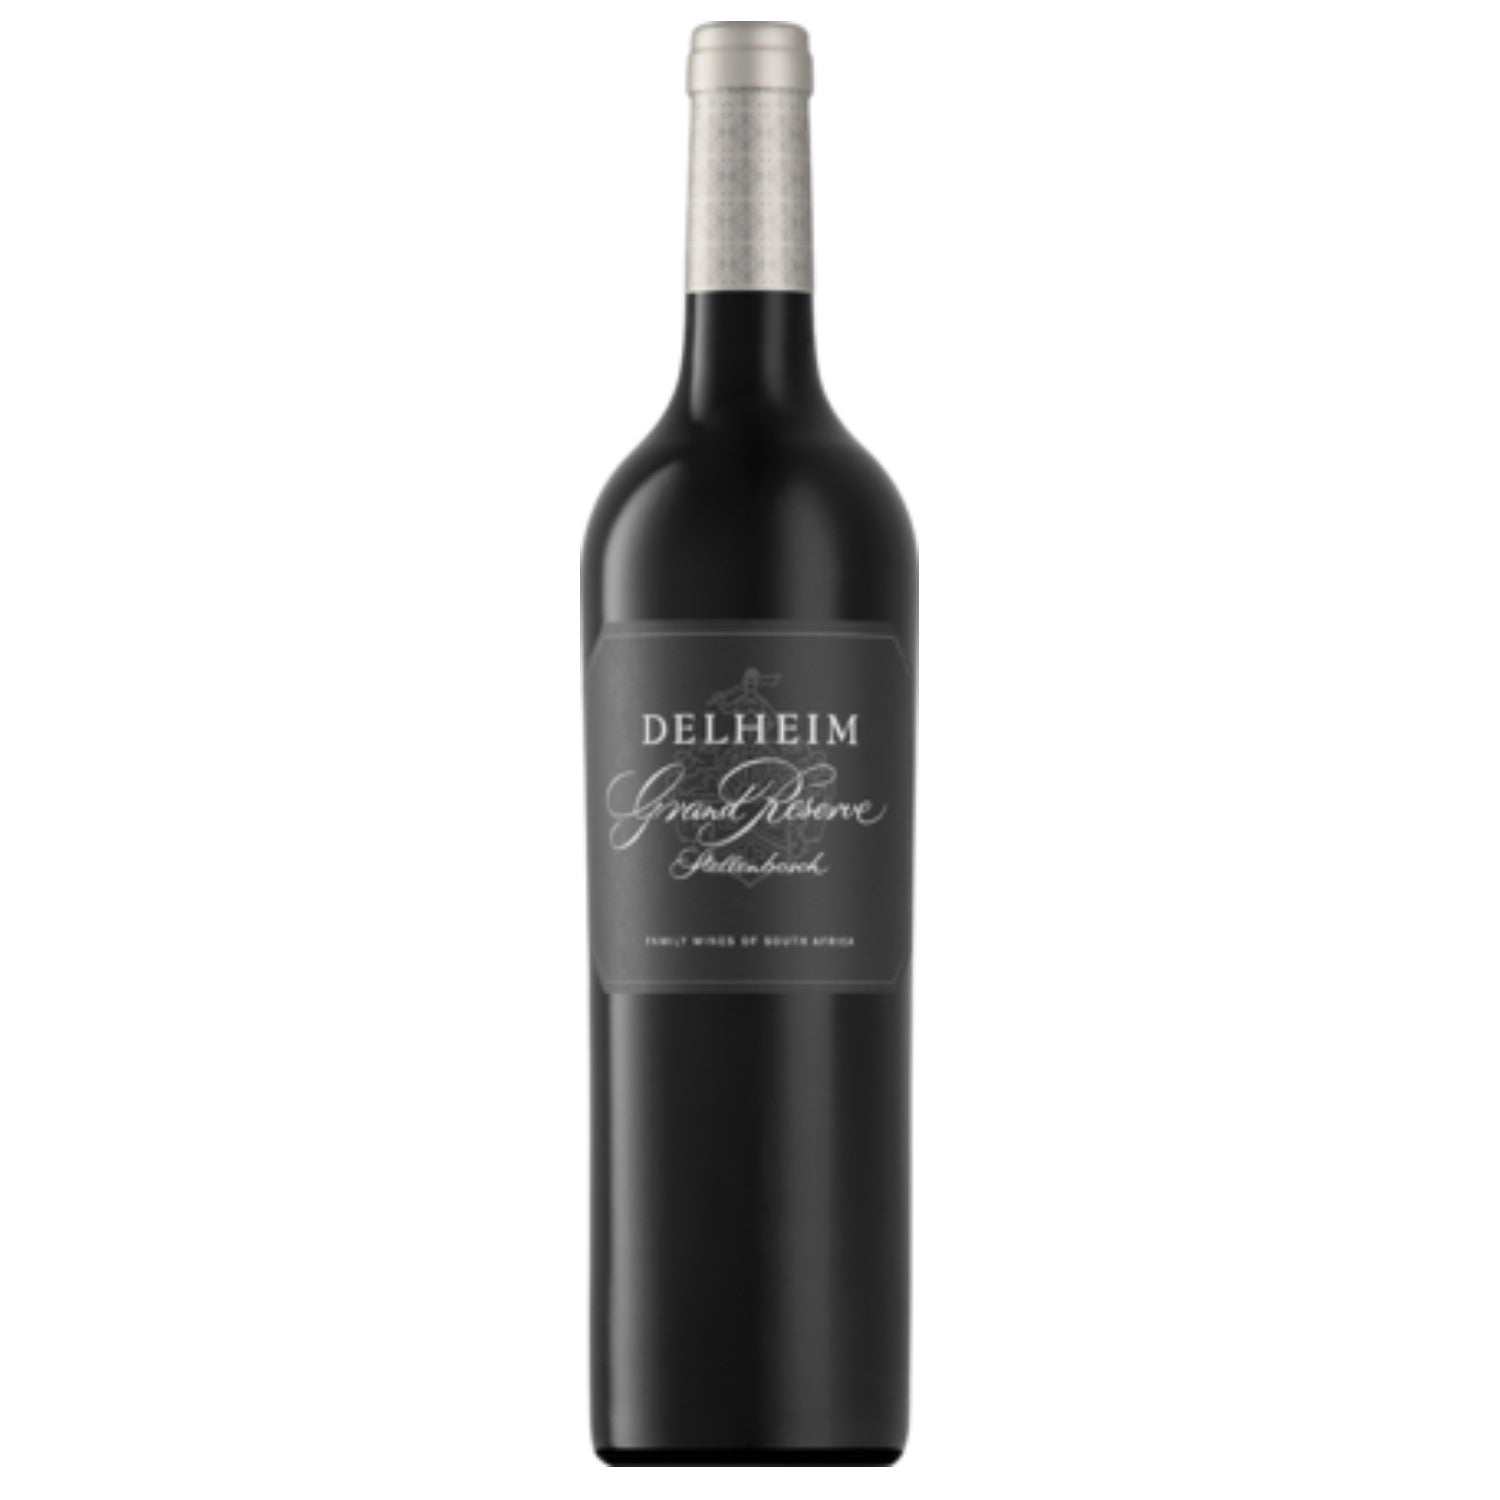 Delheim Grand Reserve Cabernet Sauvignon Stellenbosch Rotwein Wein trocken Südafrika (12 x 0.75l) - Versanel -